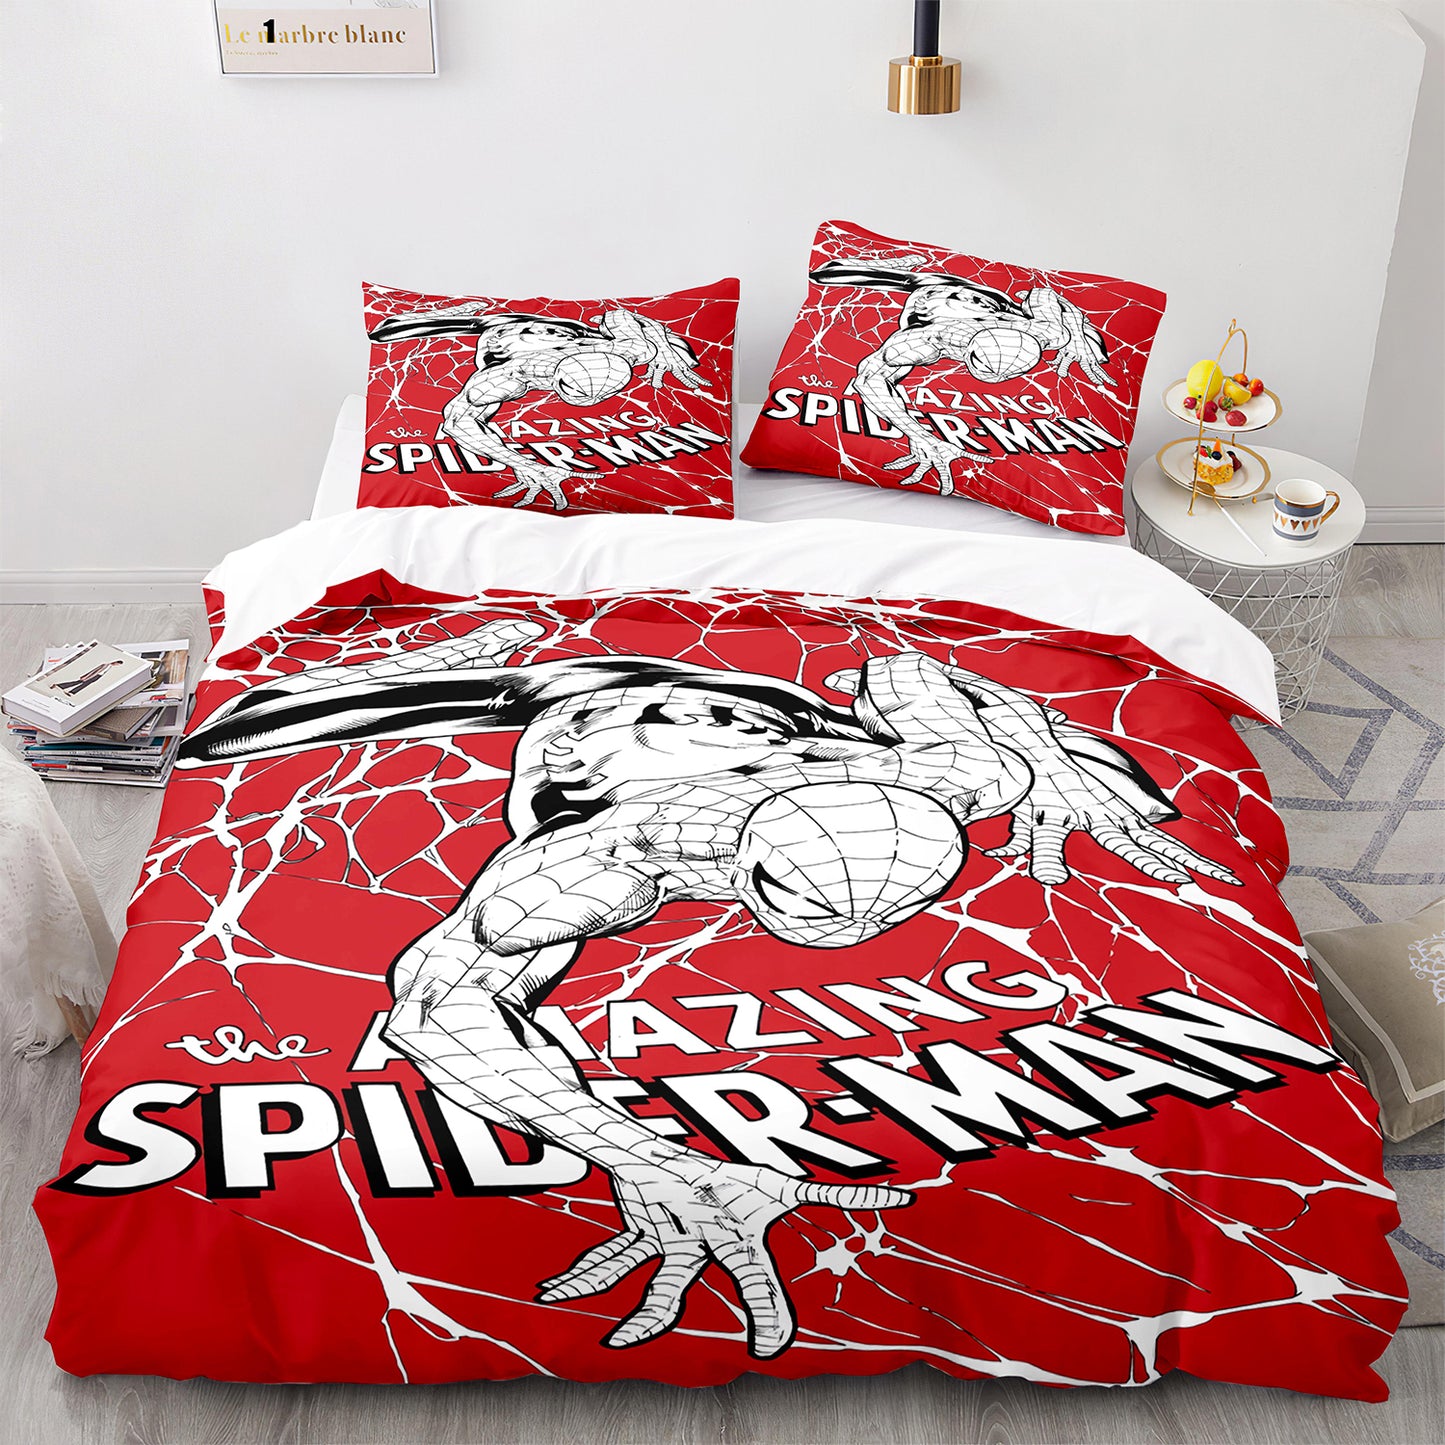 Erstaunliches Spider-Man-Bettwäsche-Set